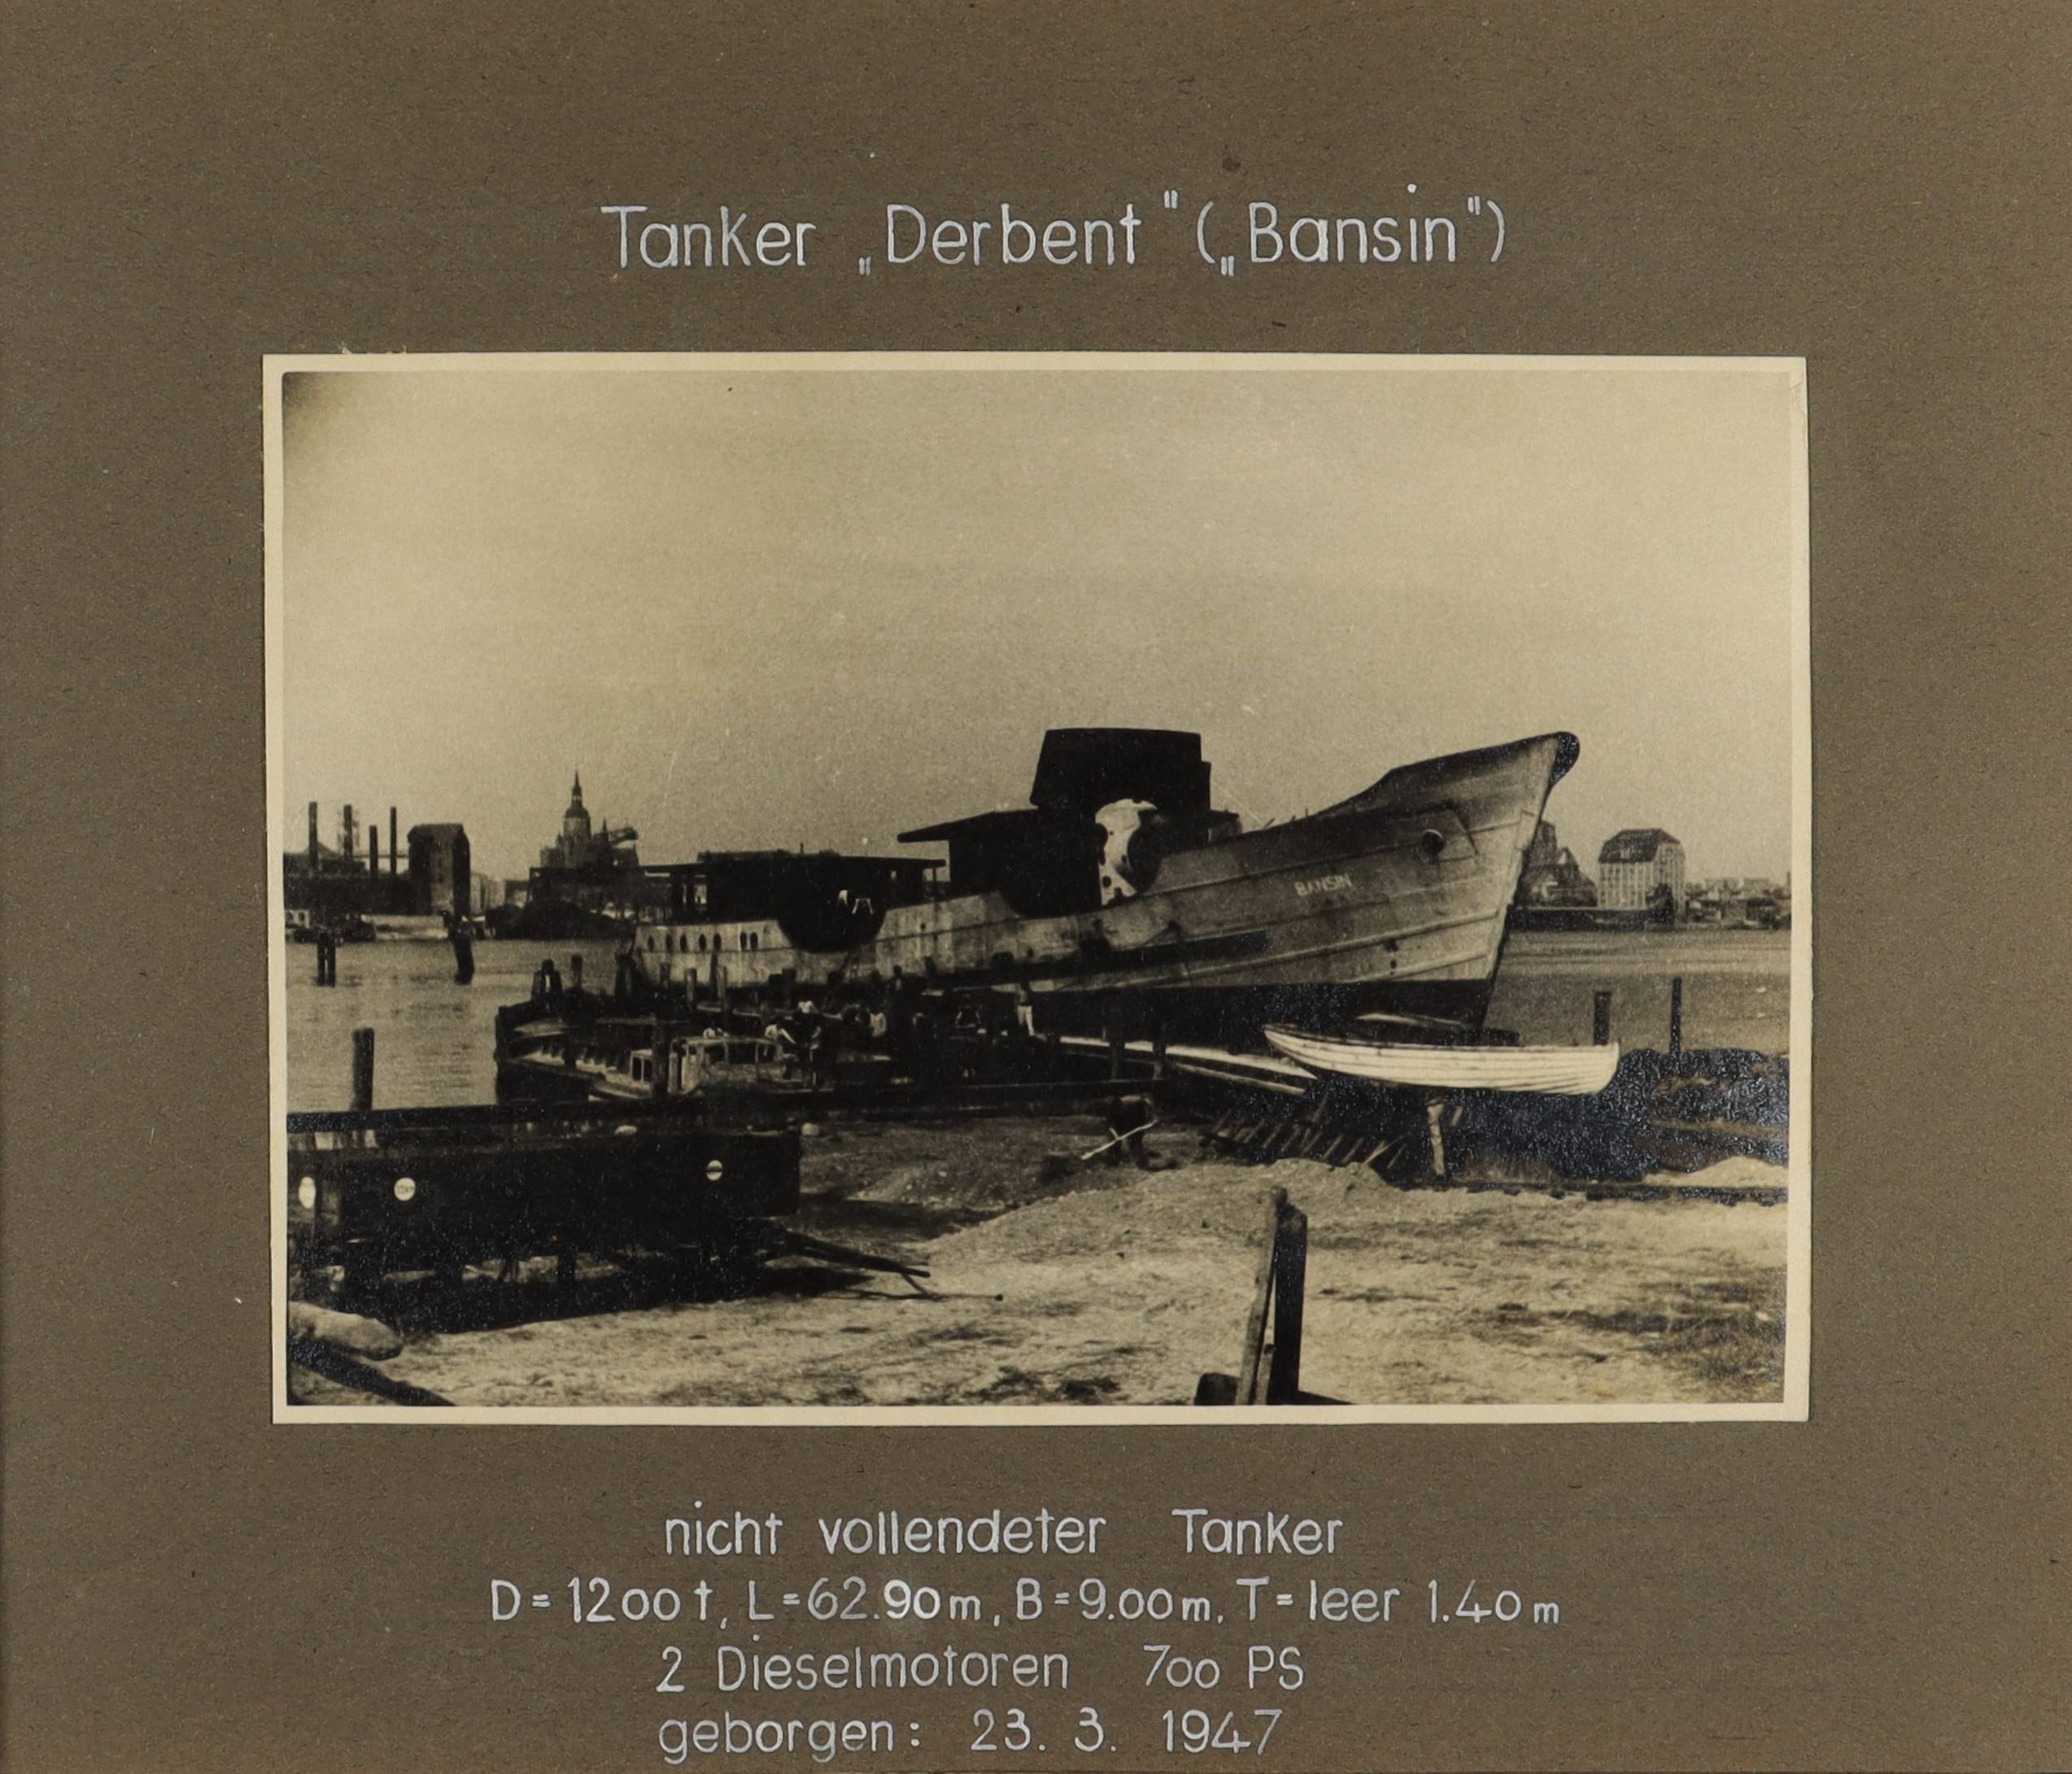 Tanker "Bansin" (späterer Name "Derbent") (Schiffbau- und Schiffahrtsmuseum Rostock RR-F)